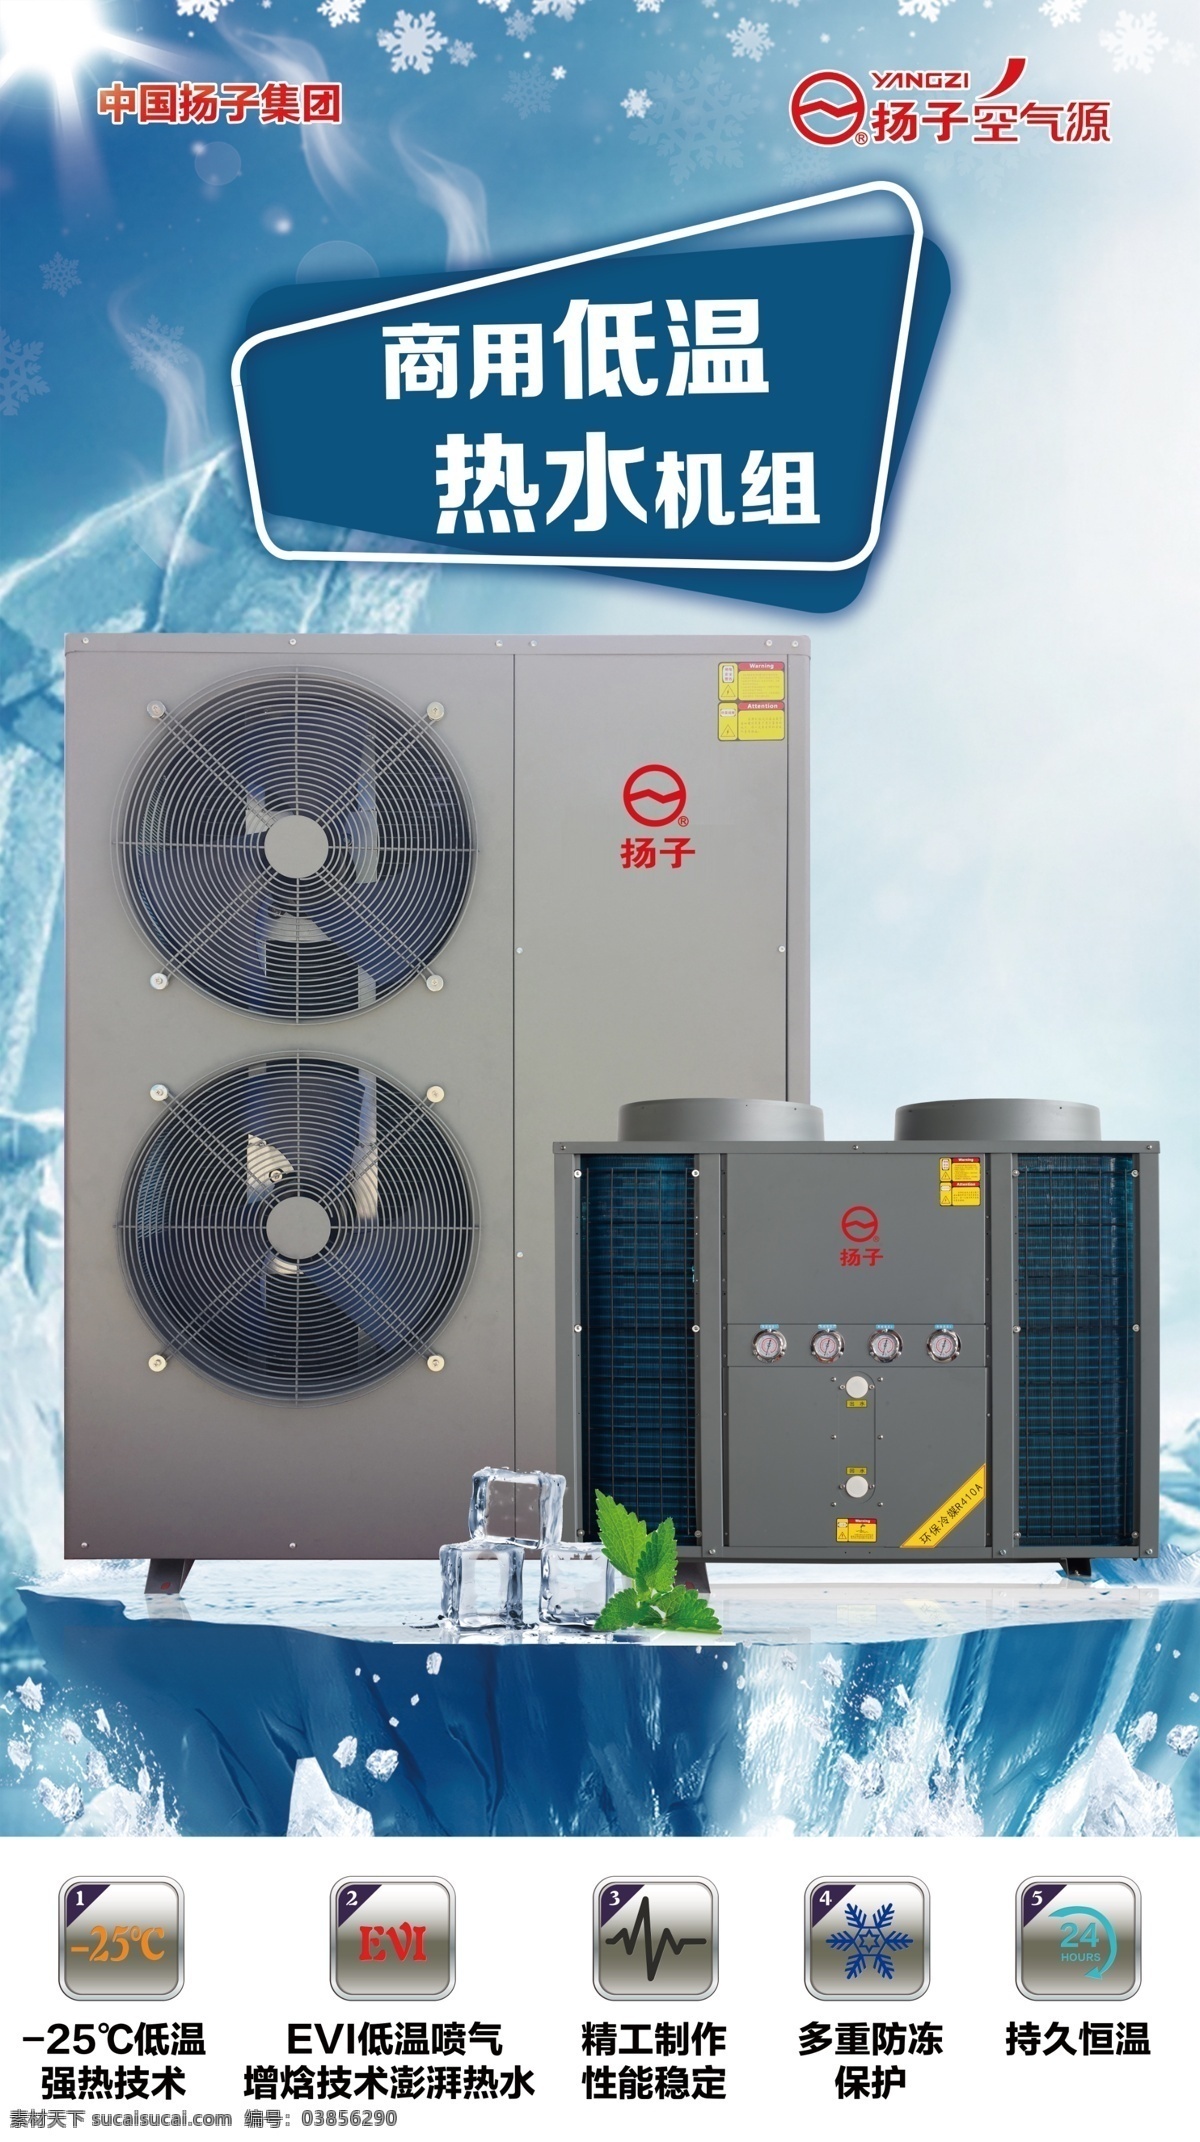 扬子空气源 冬天 冰块 低温 热水 机器 psd文件 室外广告设计